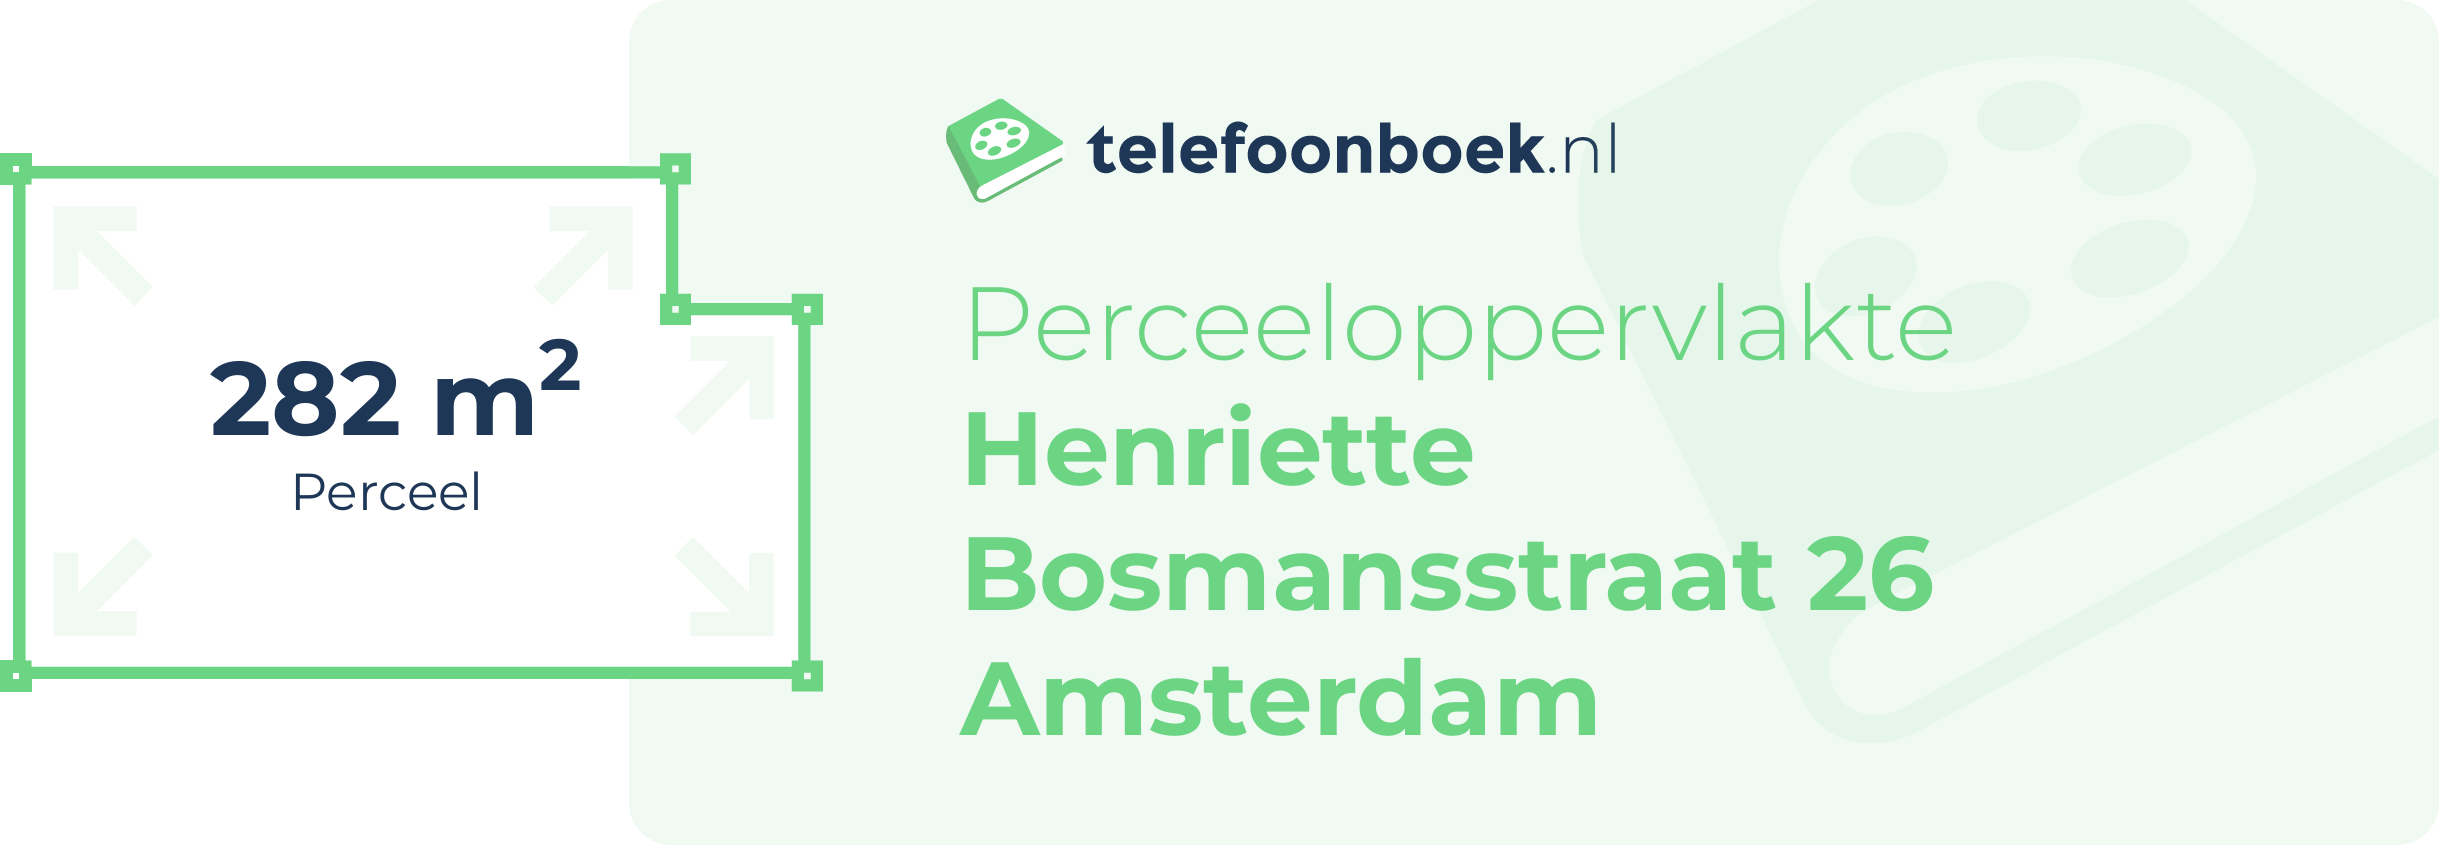 Perceeloppervlakte Henriette Bosmansstraat 26 Amsterdam